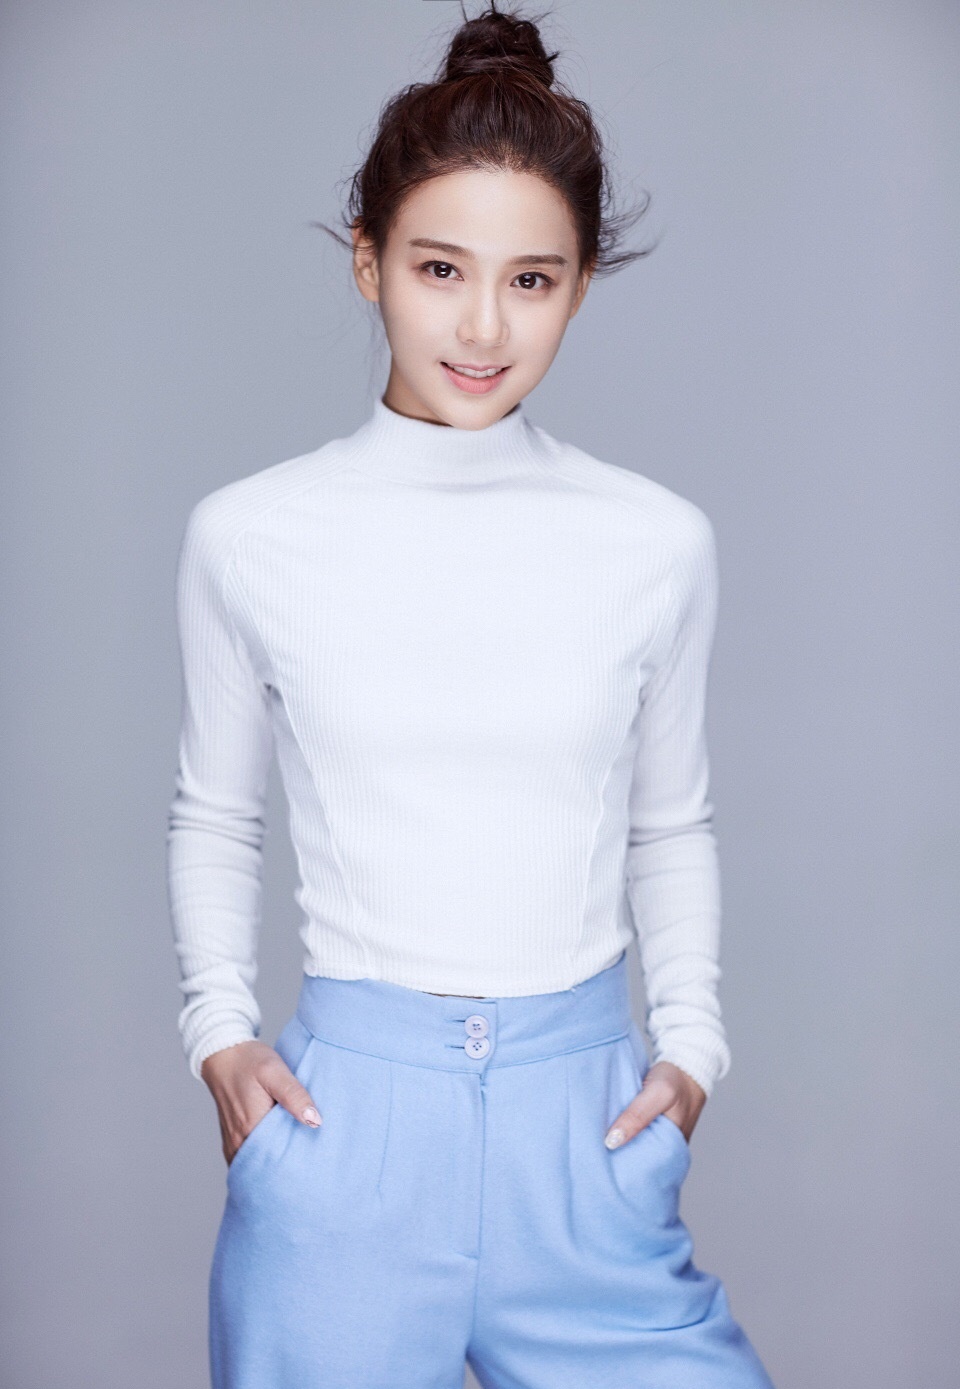 1/ 12 华娇出生于杭州,是内地女演员. 她毕业于浙江省艺校表演系.